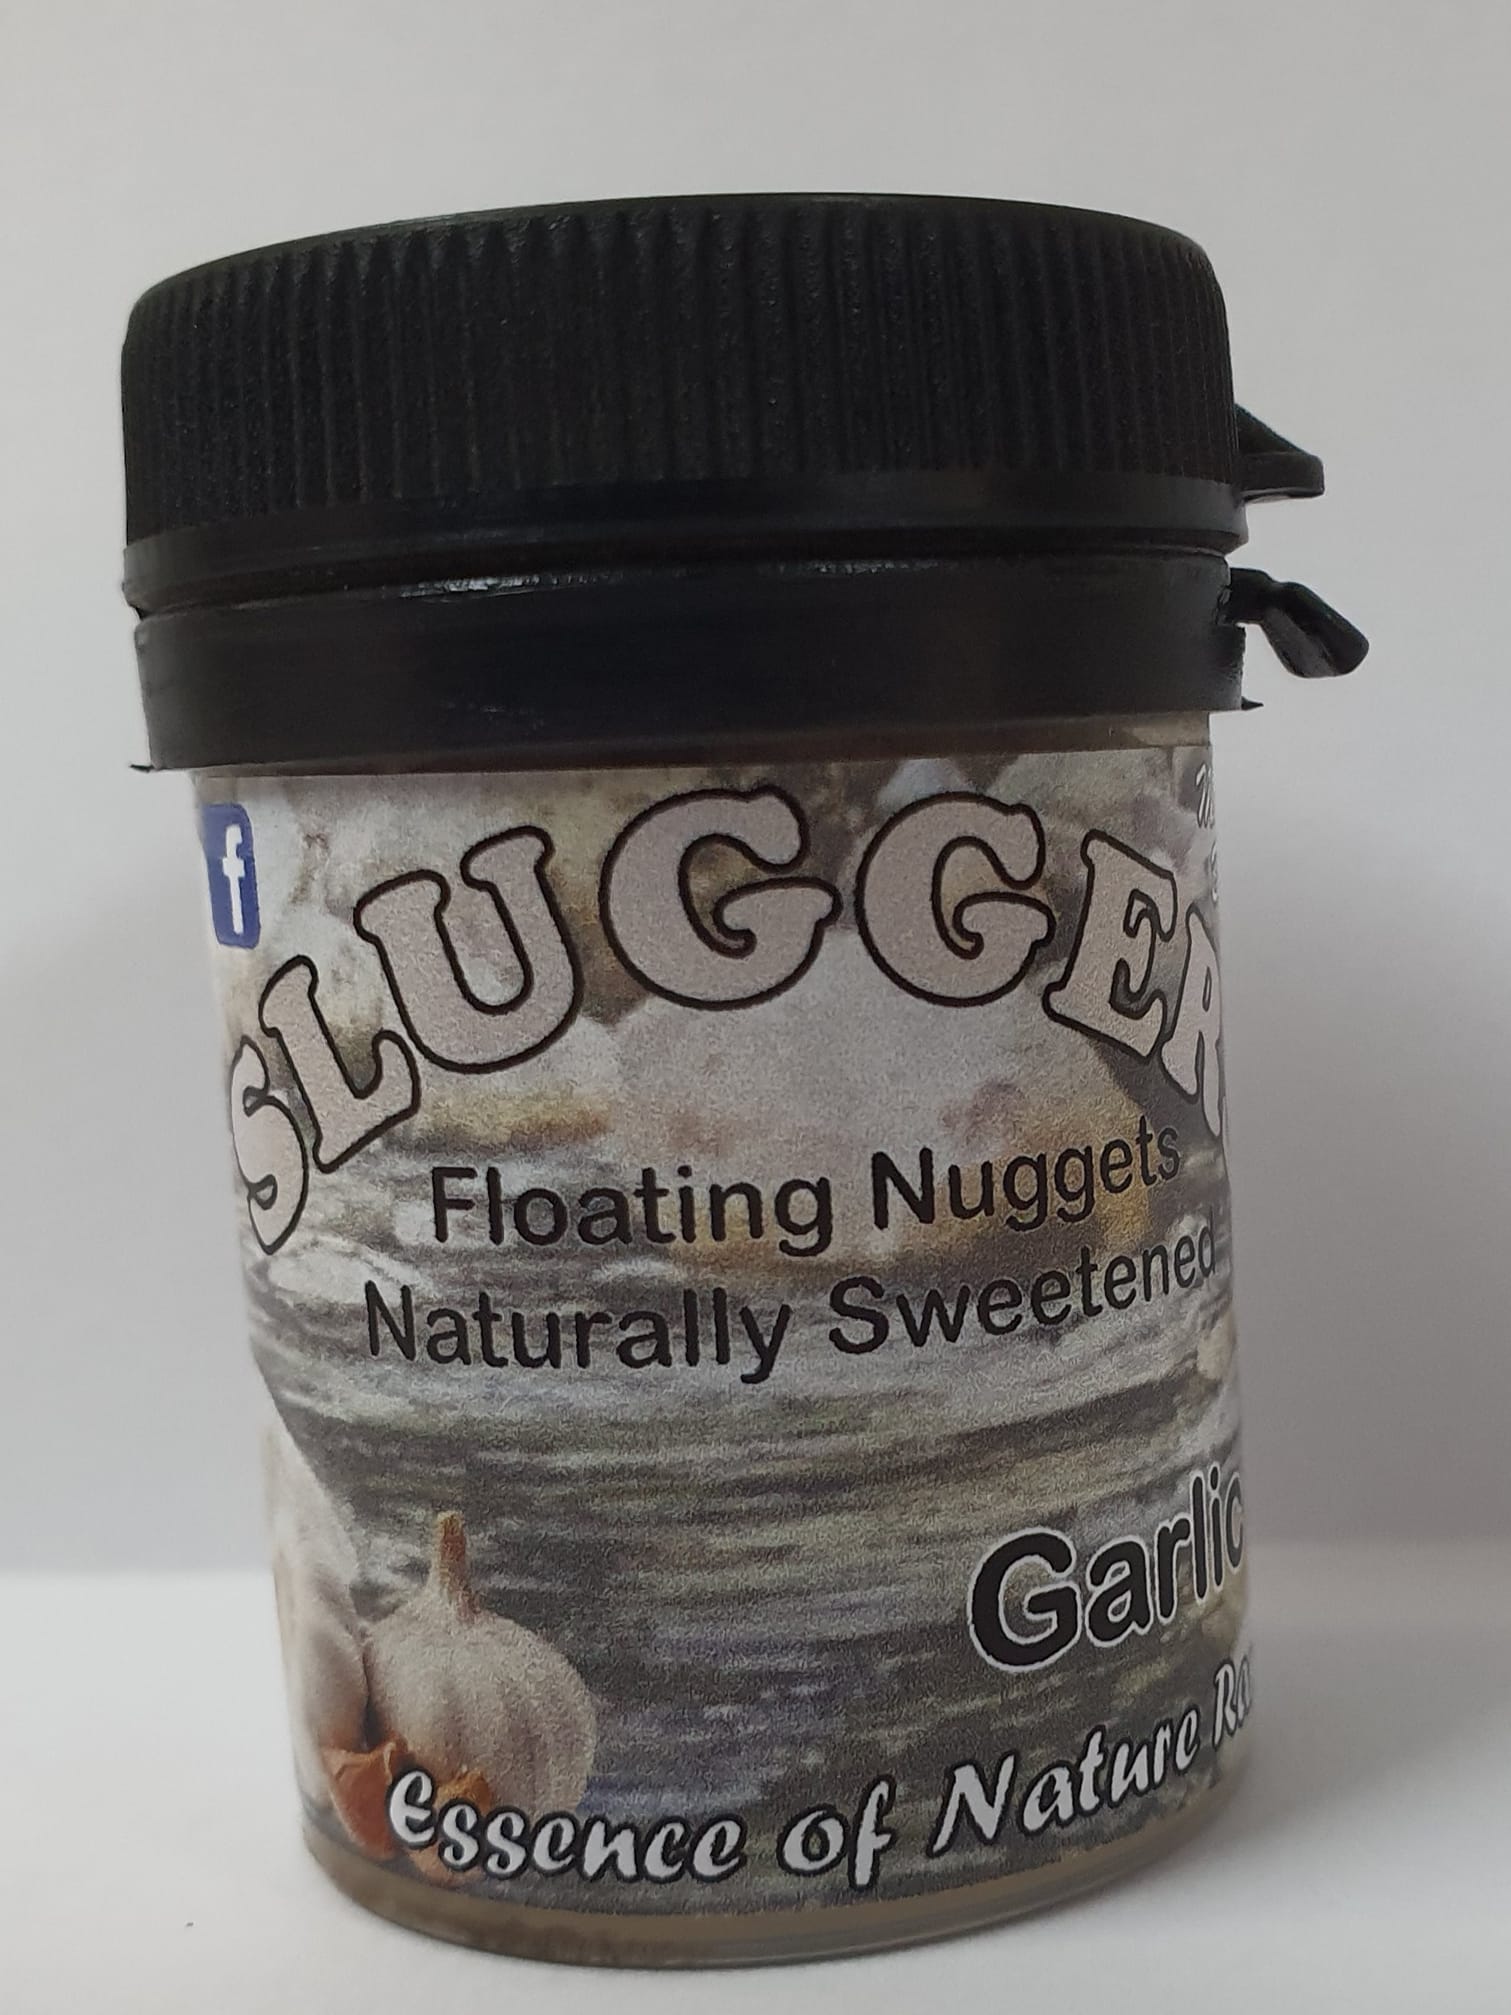 Sluggers - Garlic